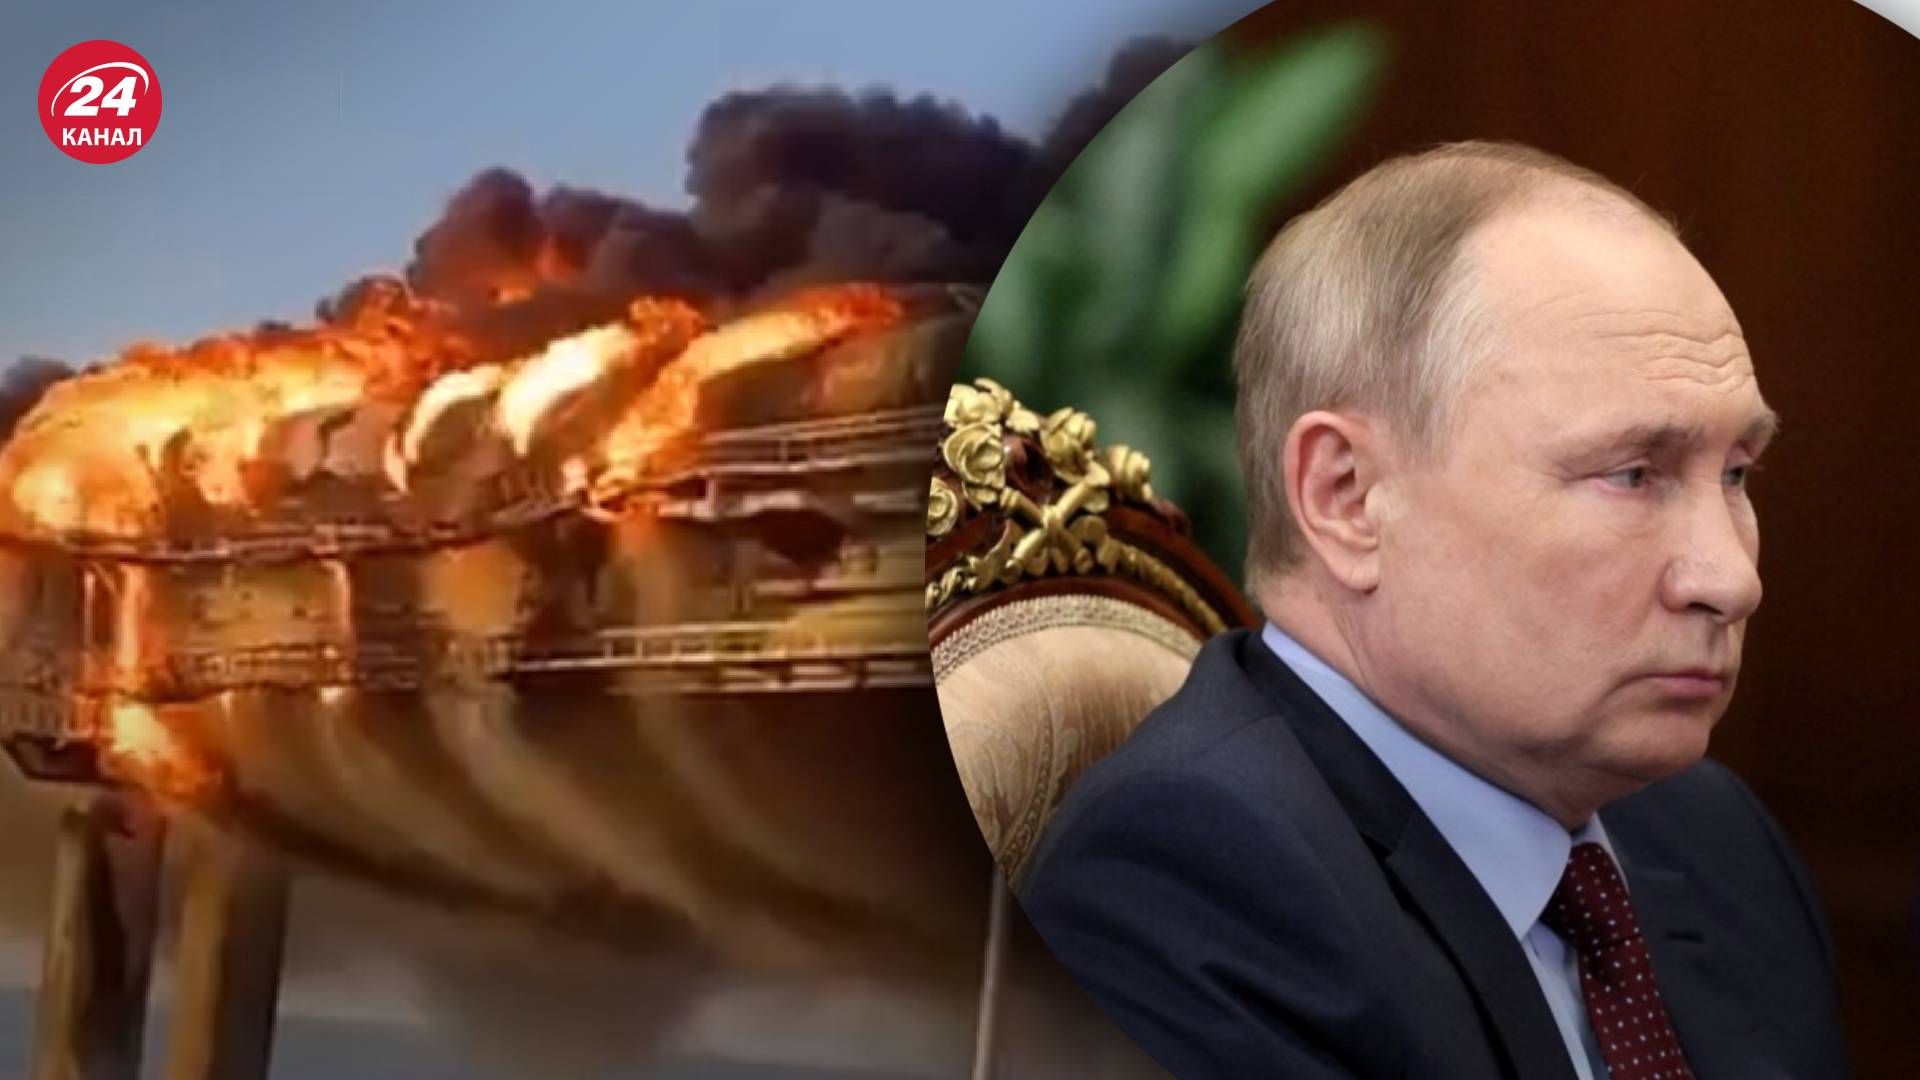  Крымский мост - Путин отреагировал на взрыв и обвинил Украину